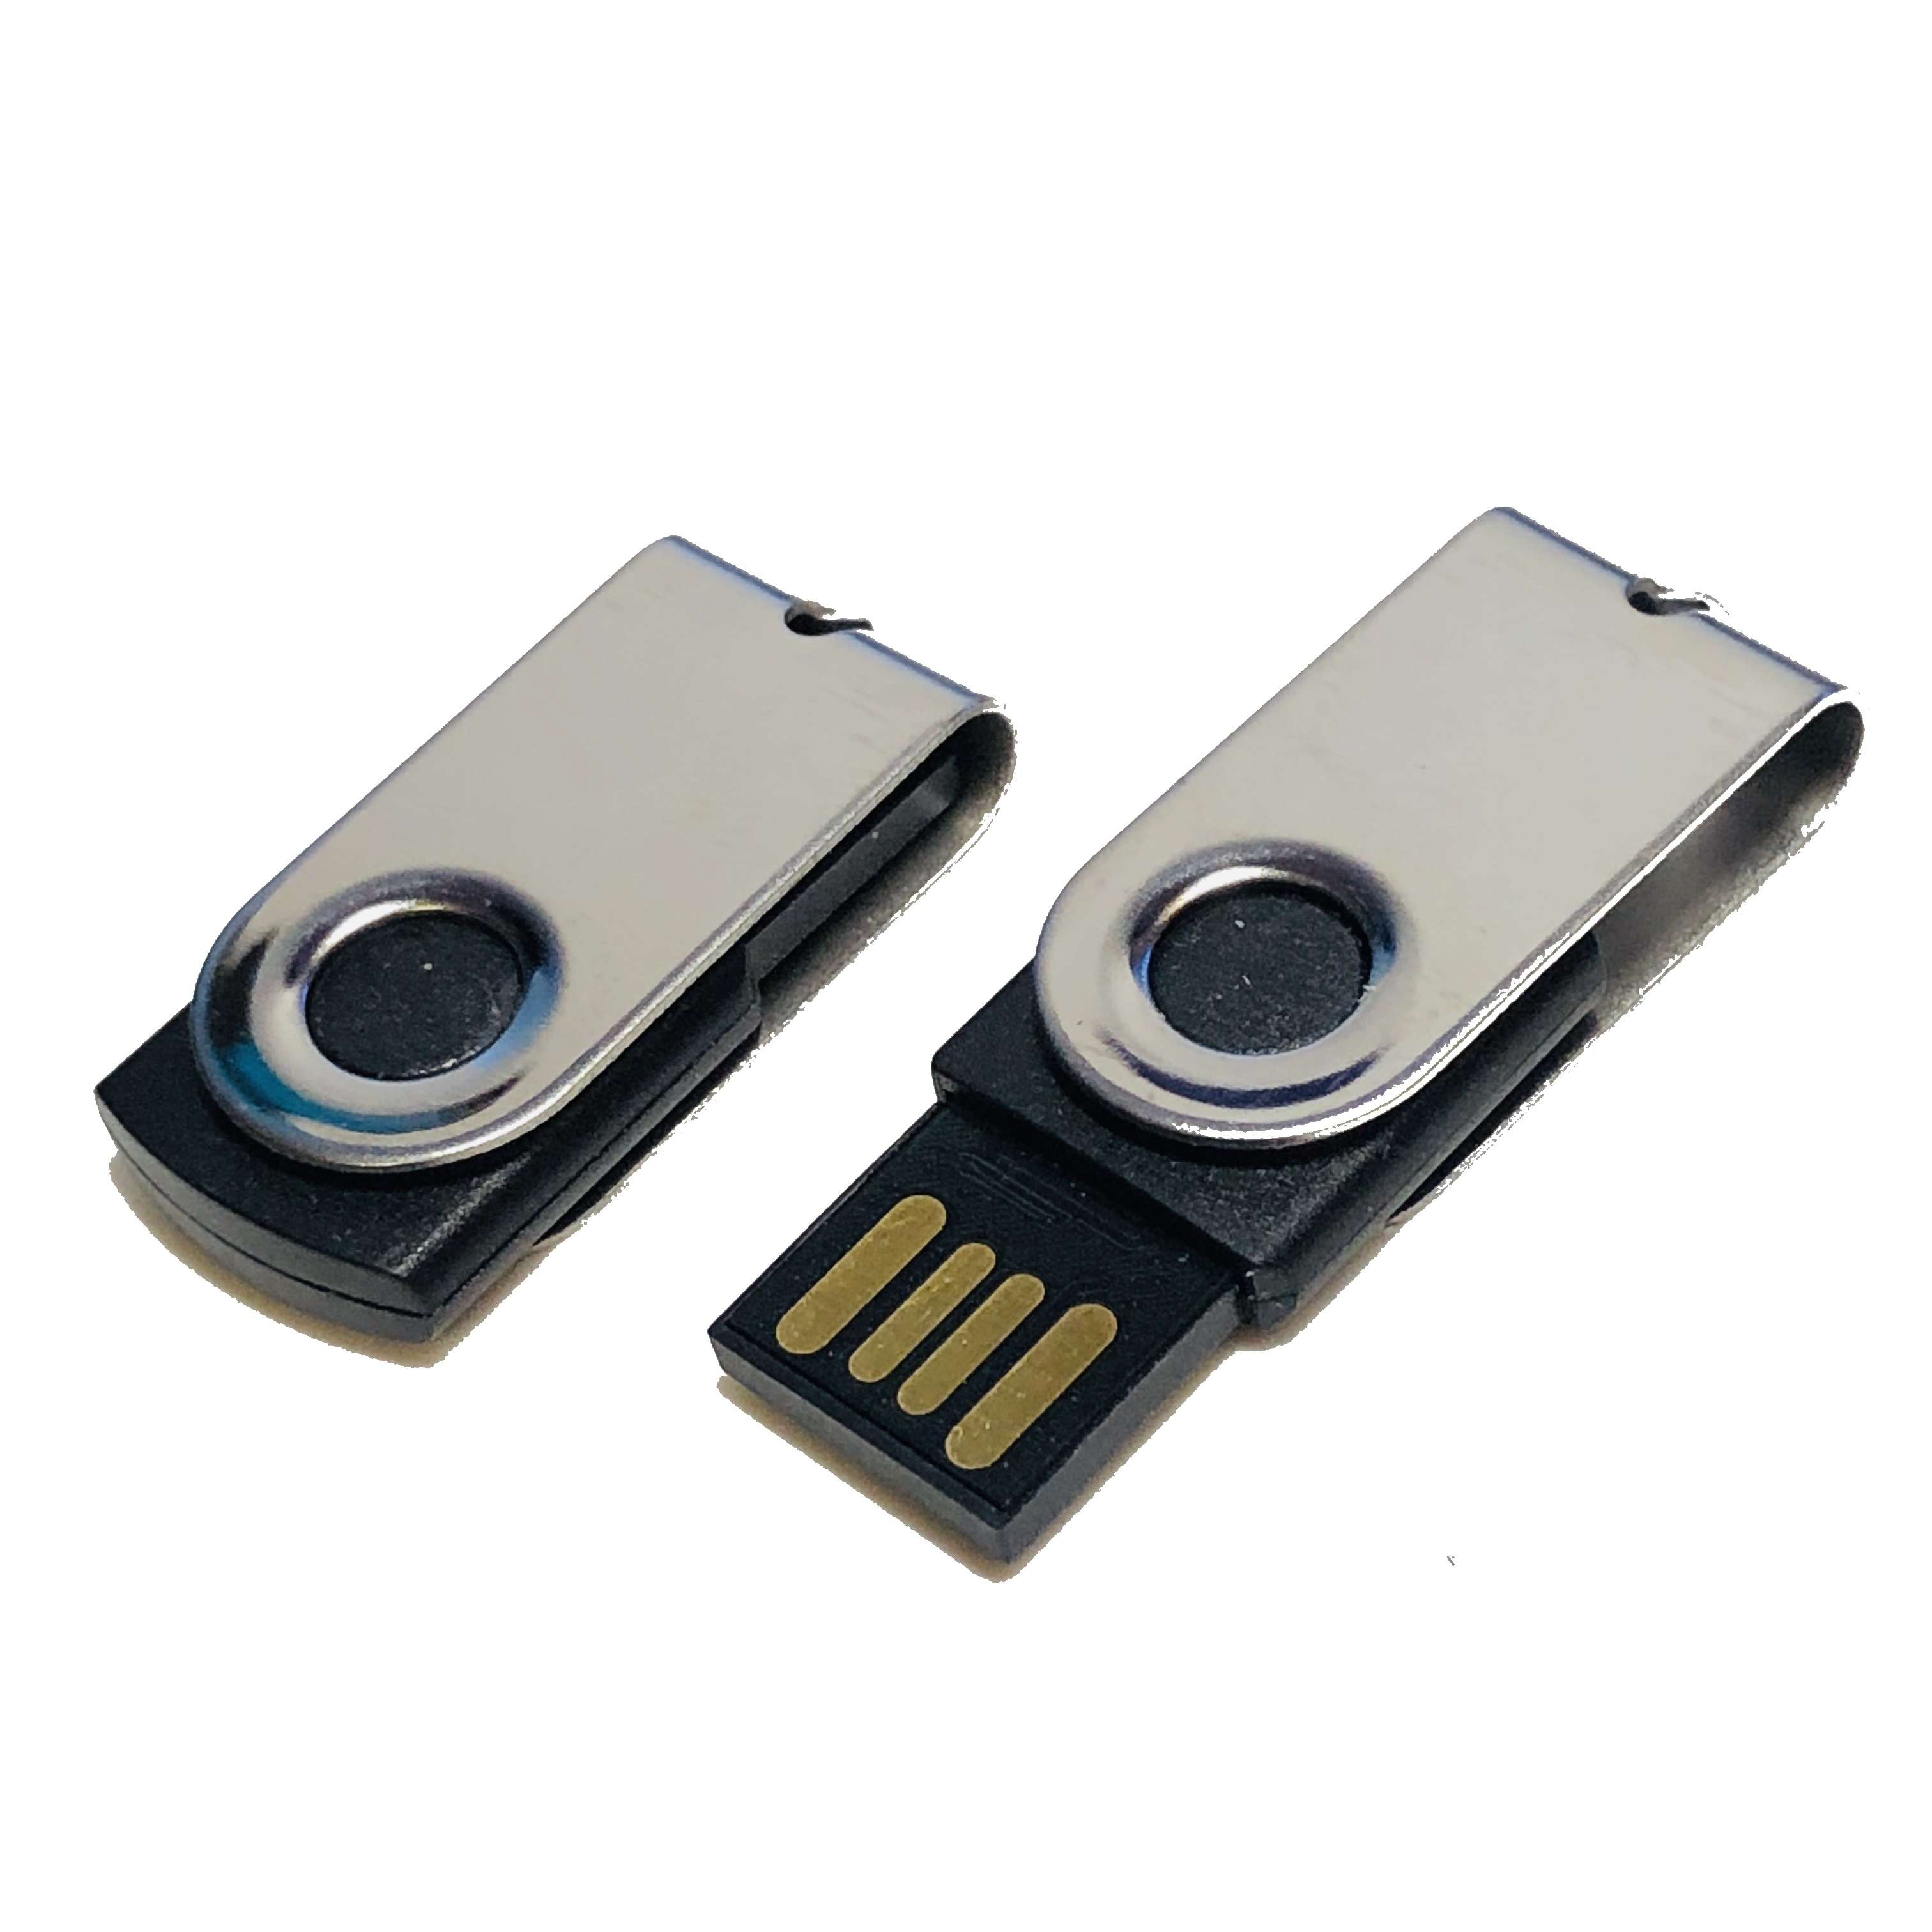 USB GERMANY ® 128 (Schwarz-Chrome, MINI-SWIVEL GB) USB-Stick